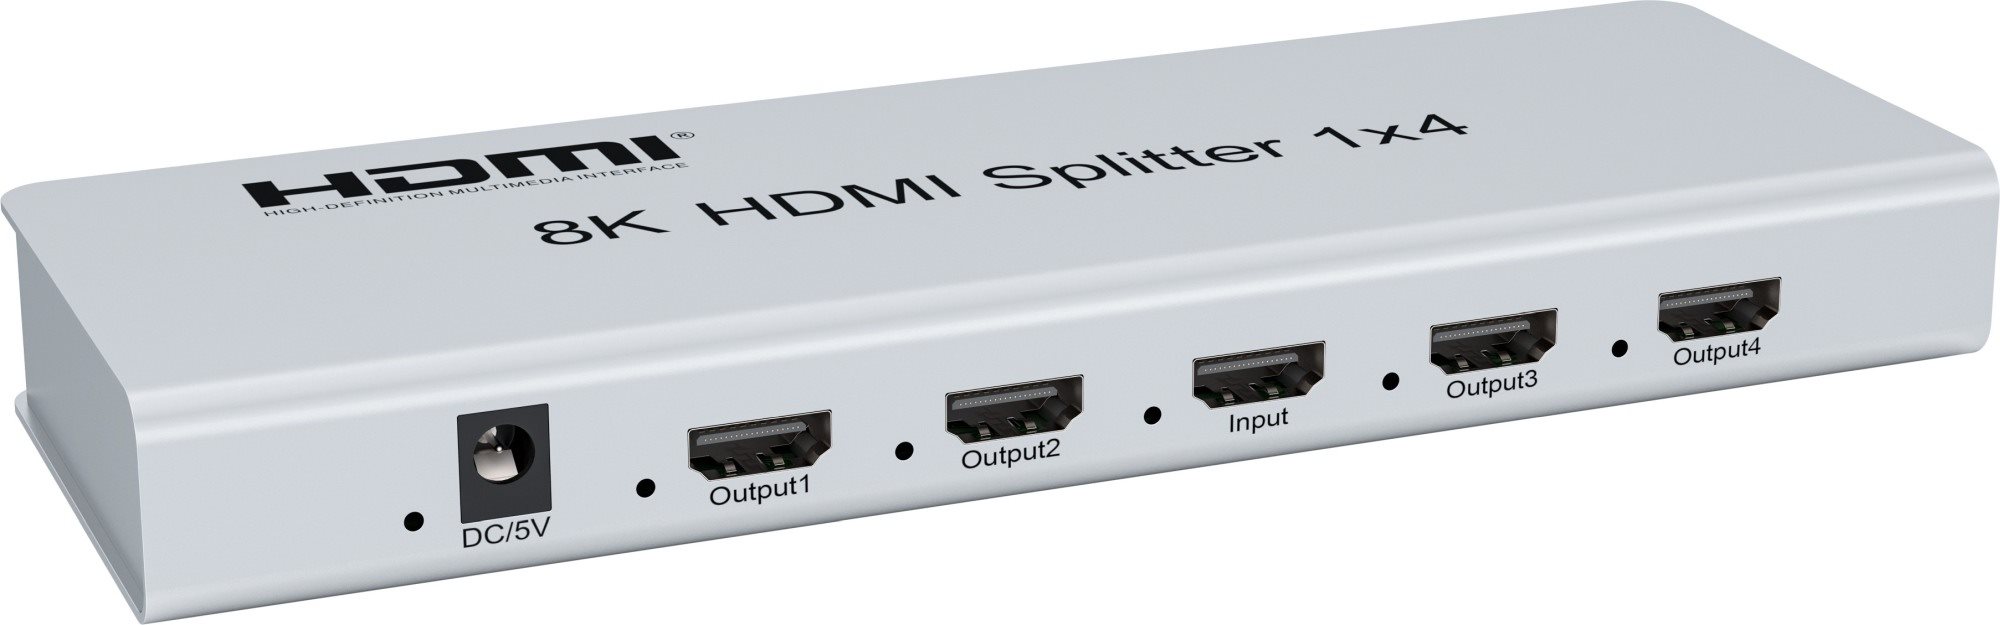 PremiumCord HDMI 2.1 splitter 1-4 porty,  8K@60Hz,  4K@120Hz,  1080p,  HDR0 